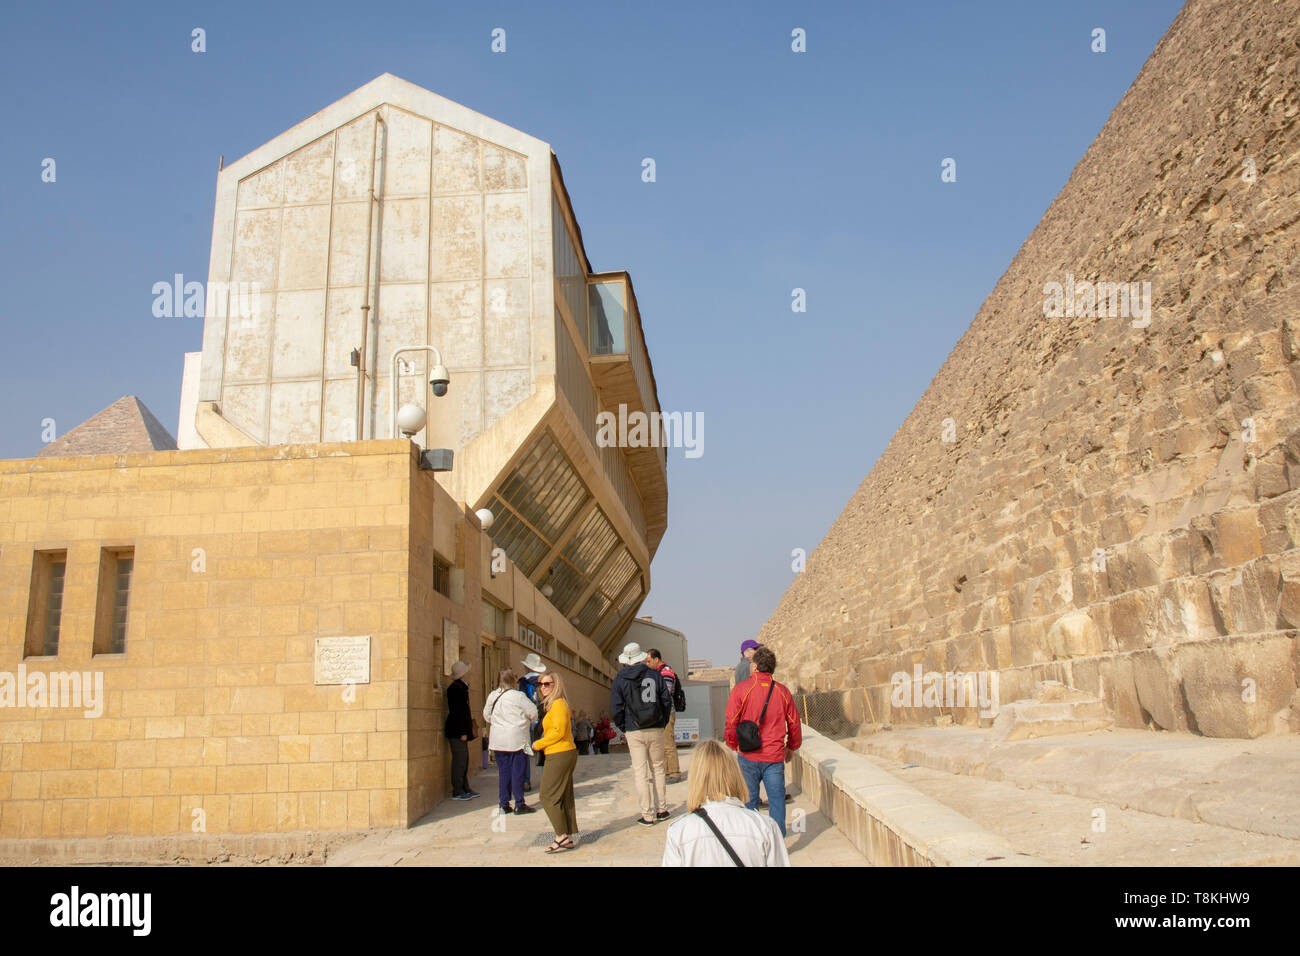 La construction de maisons de forme unique, un original intact, un grand voile presque certainement construit pour le pharaon égyptien Khufu plus de 4 000 oui Banque D'Images